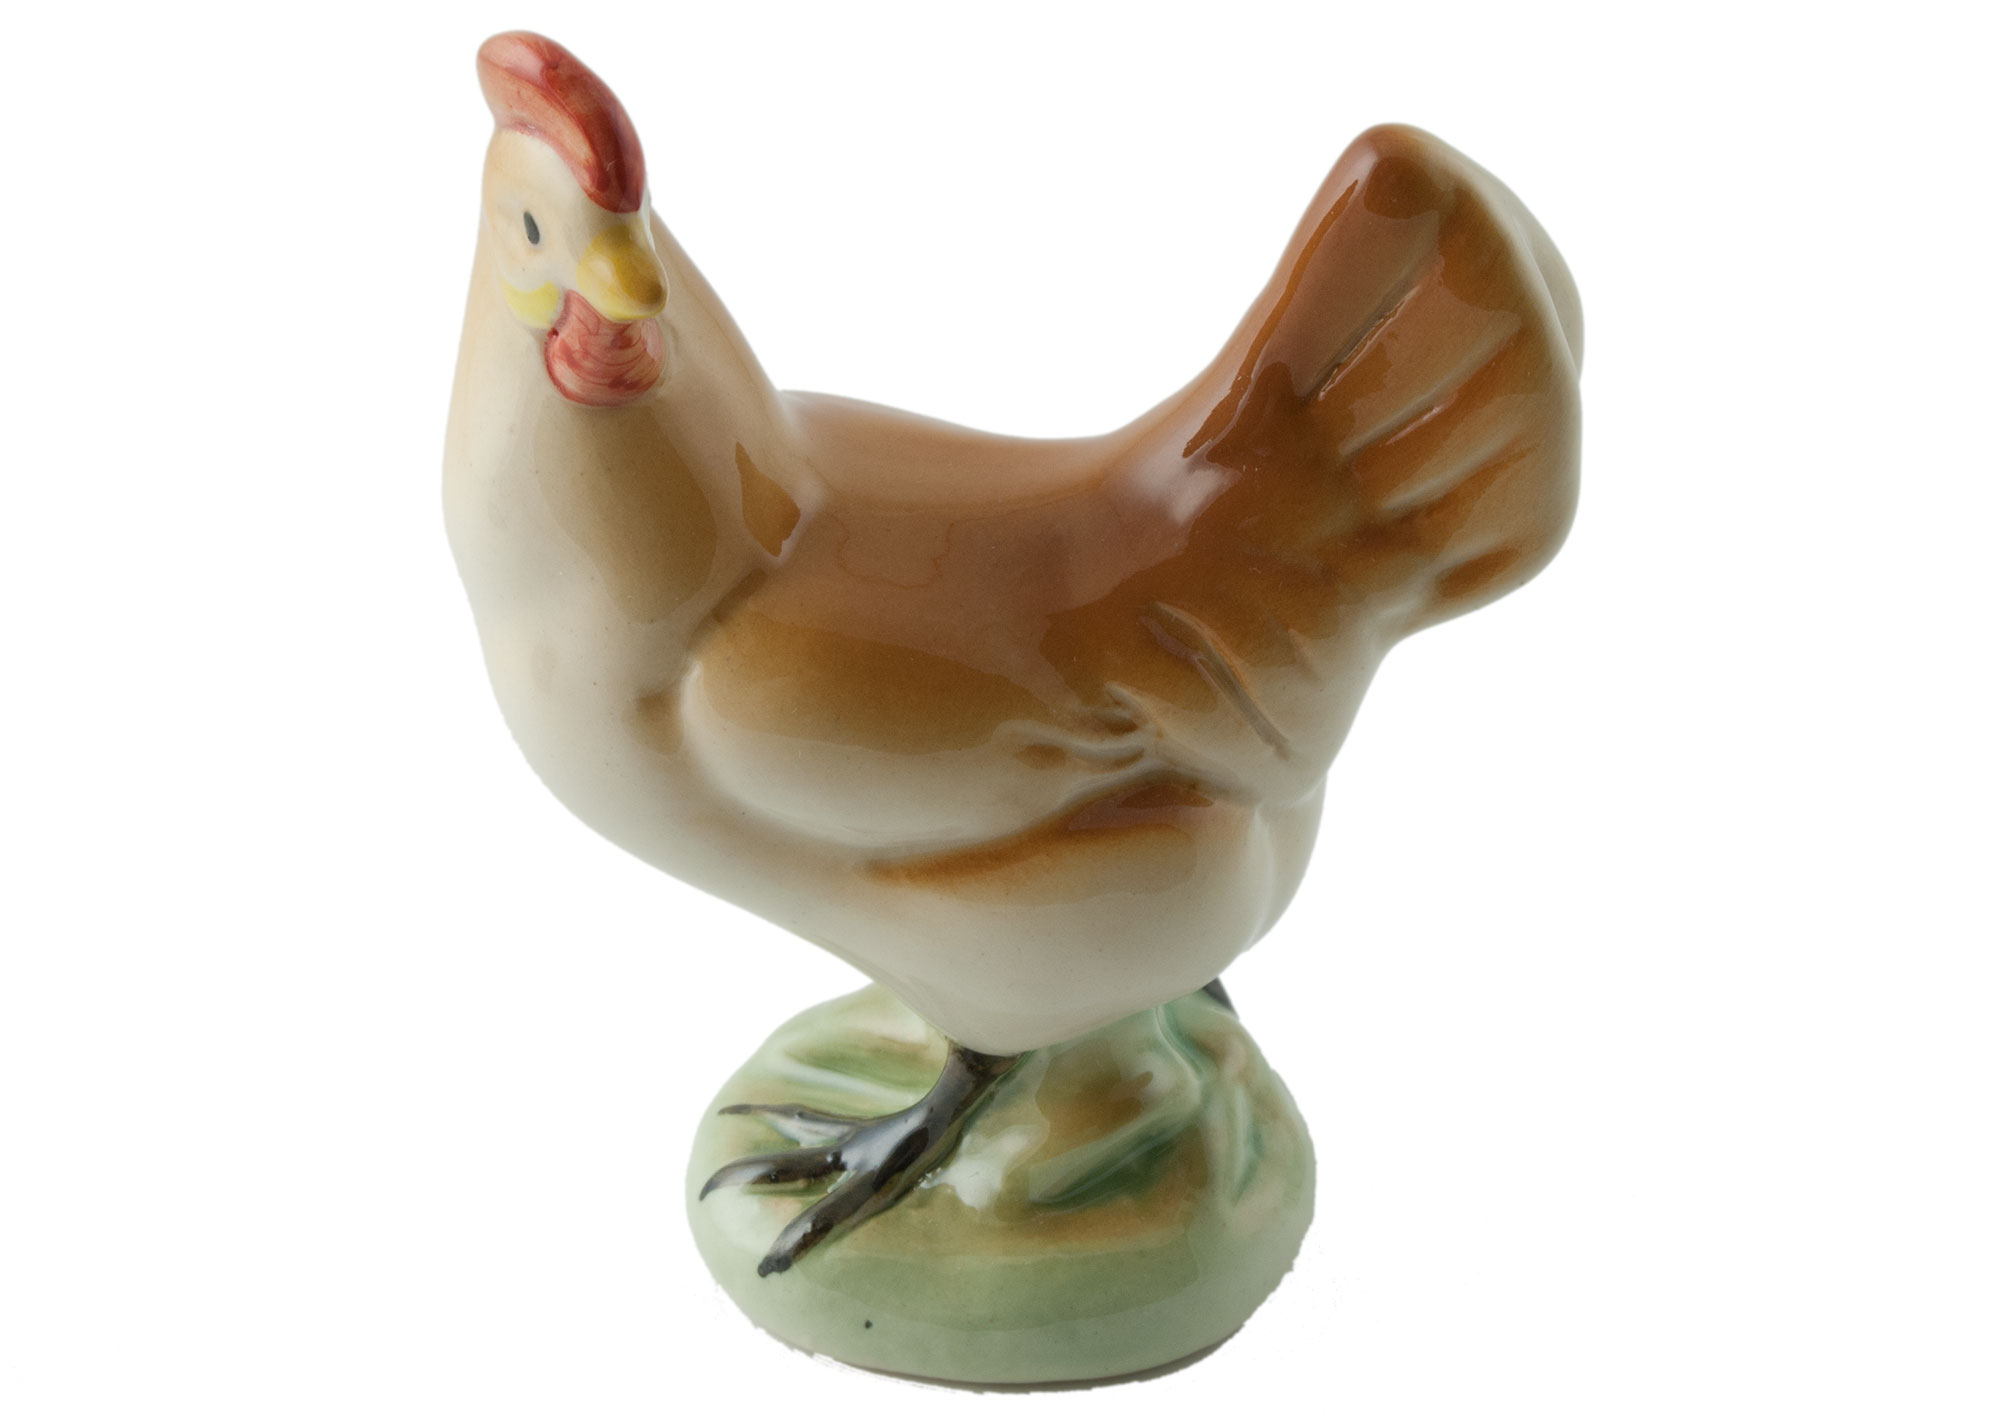 Buy Hen Porcelain Figurine at GoldenCockerel.com